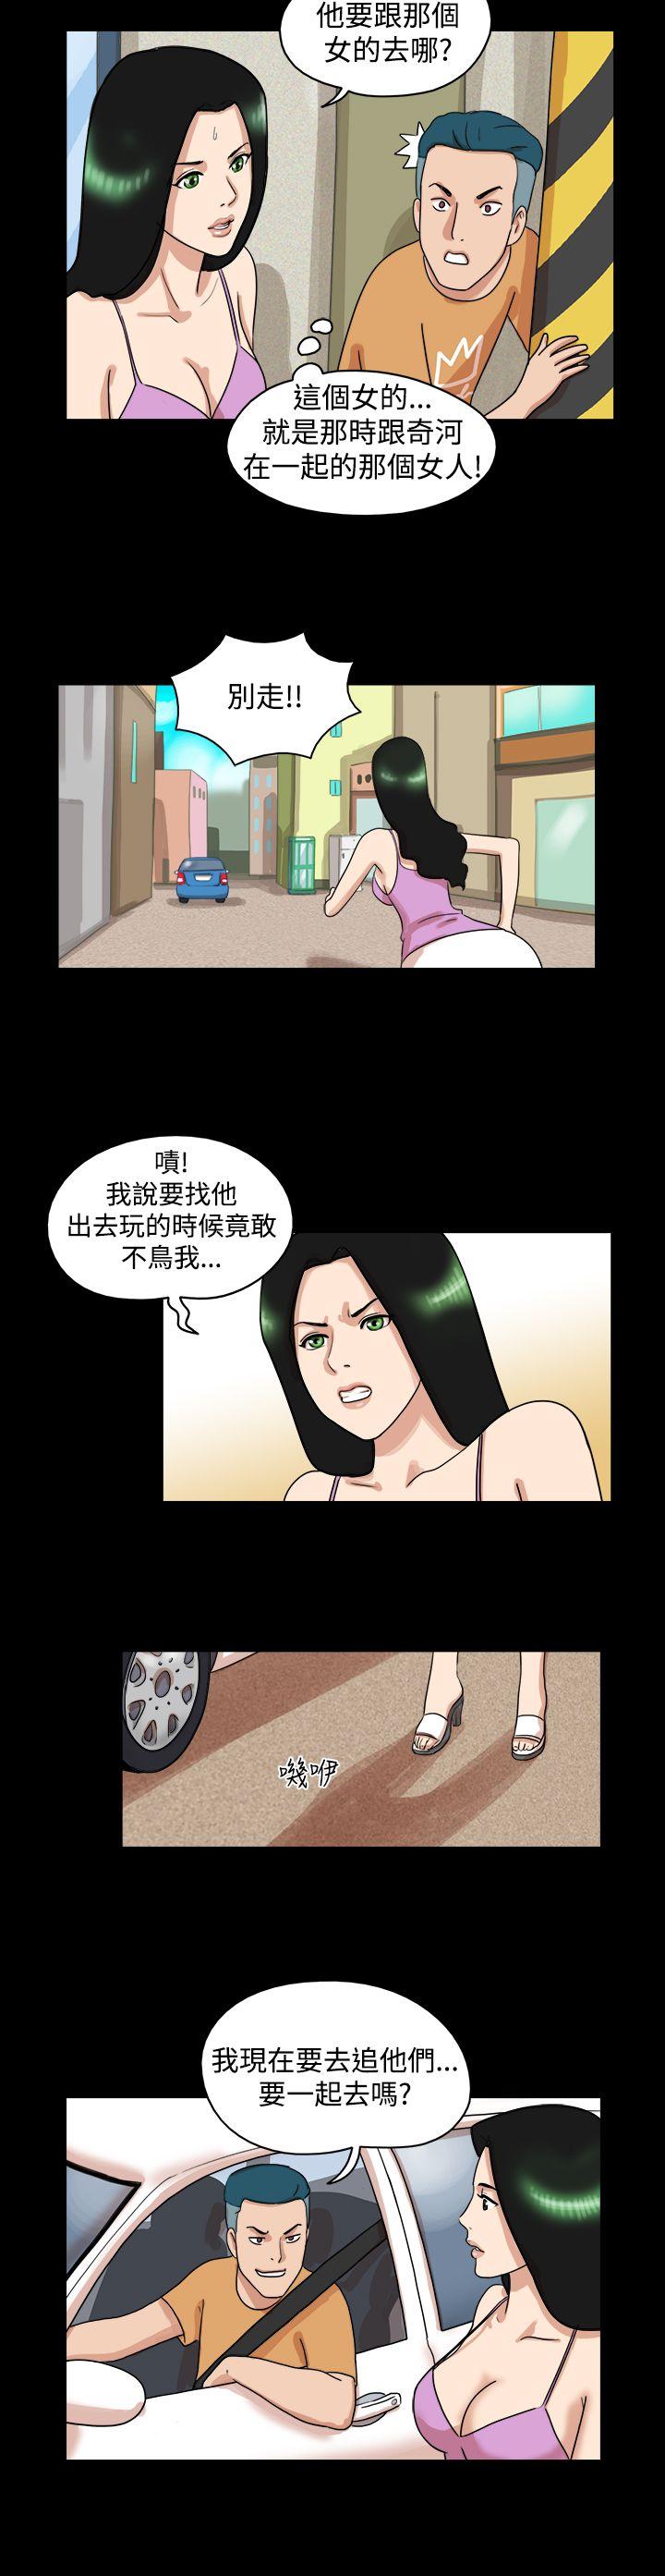 韩国污漫画 17種性幻想第一季 第29话 3